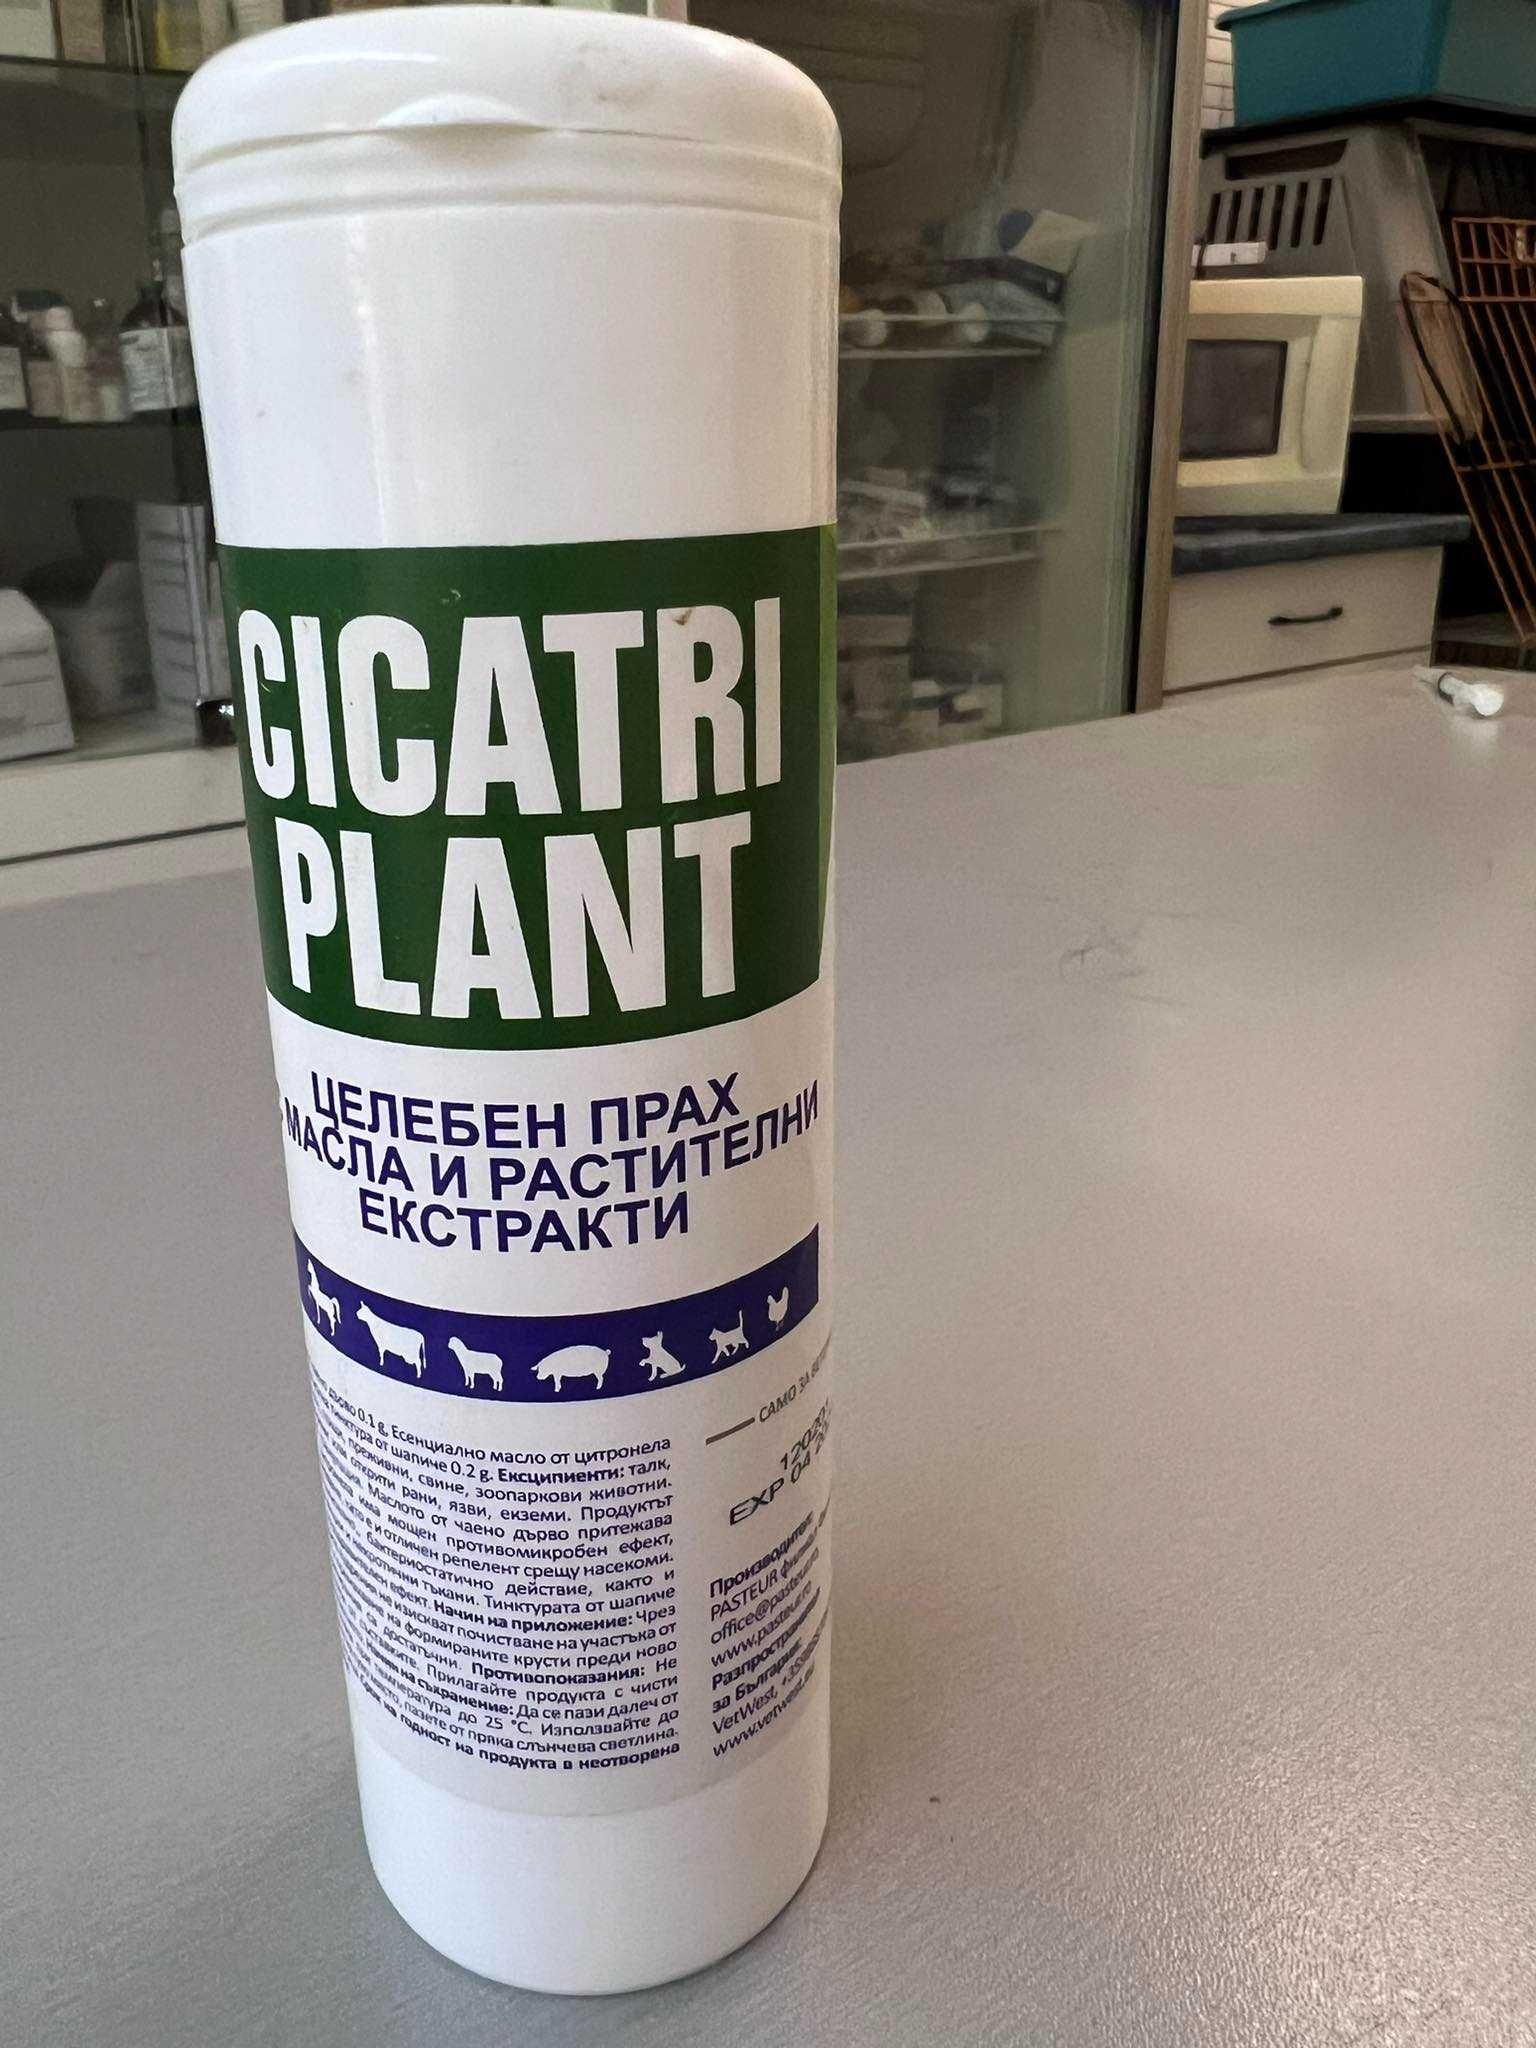 CICATRI PLANT - Целебен прах с растителни масла (срещу кожни проблеми)